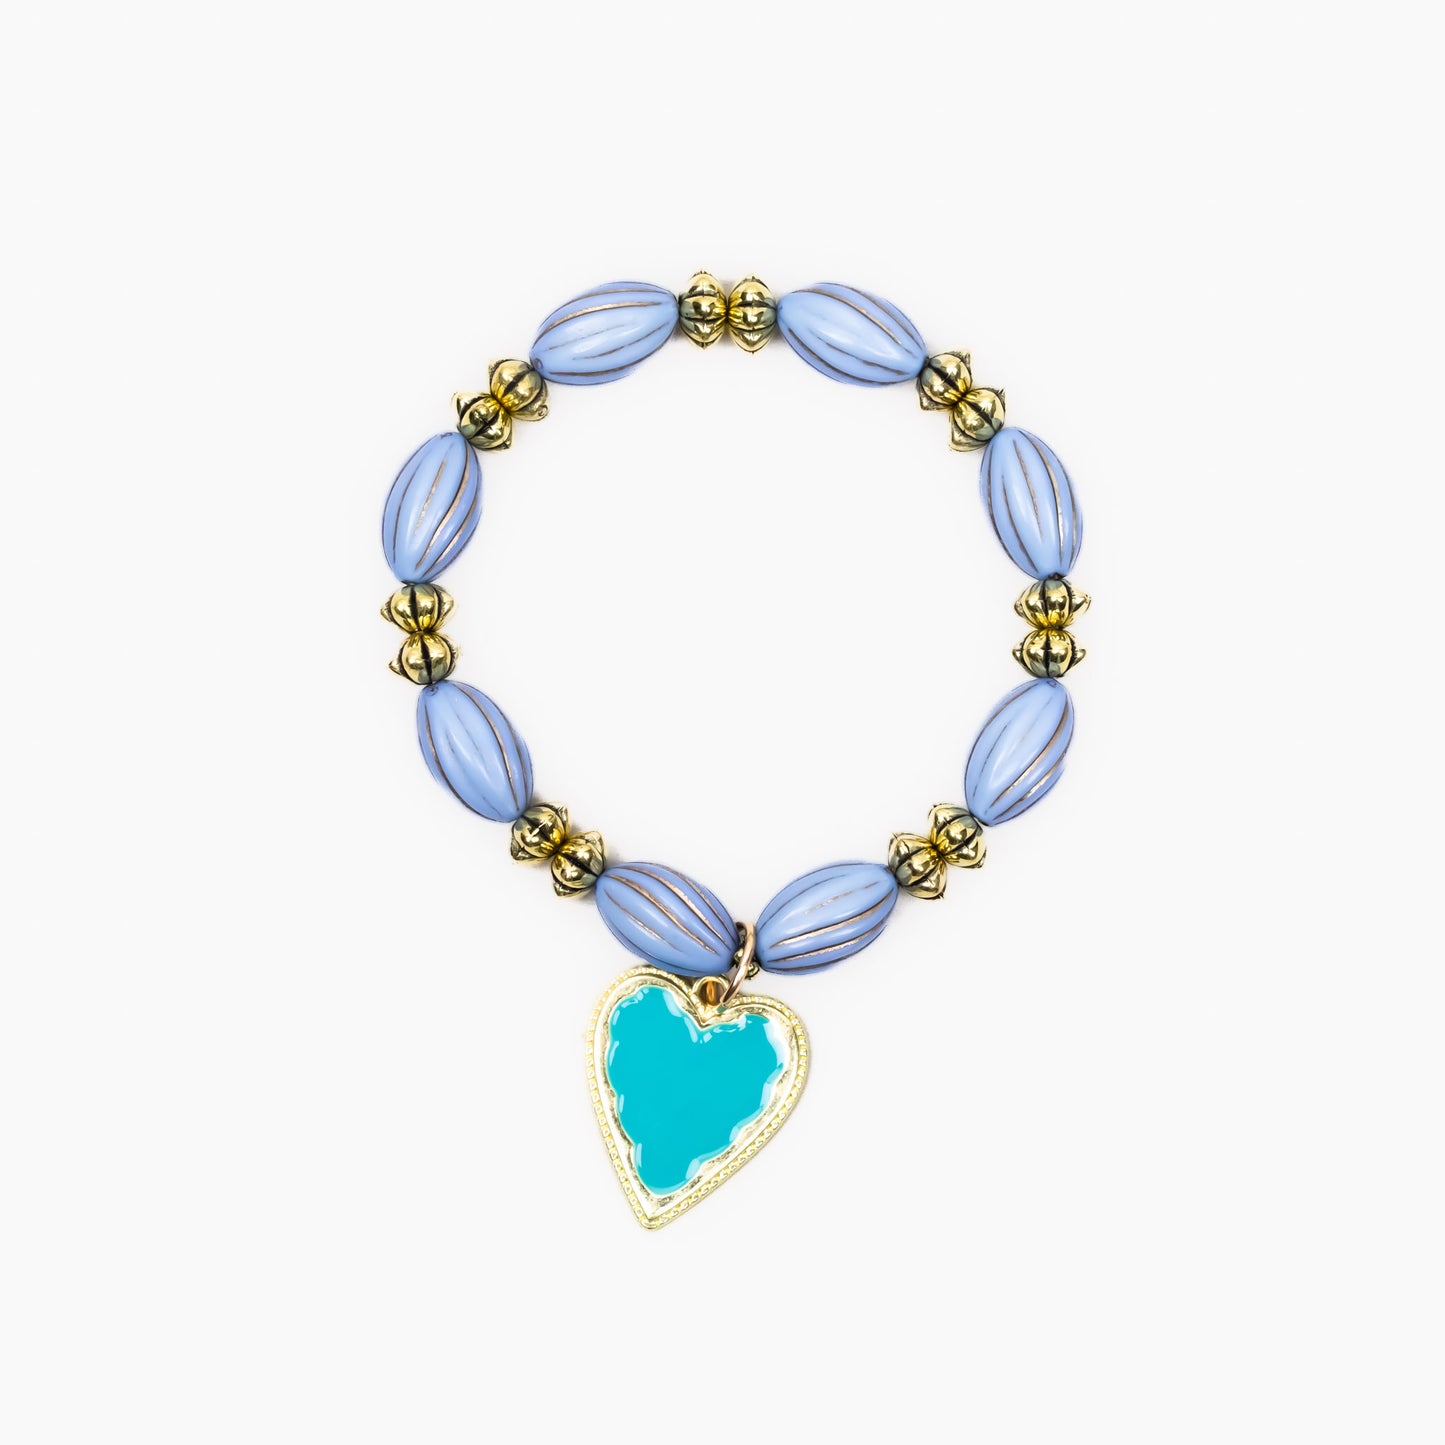 Brățară elastică opulence cu charm în formă de inimă - Albastru, Auriu